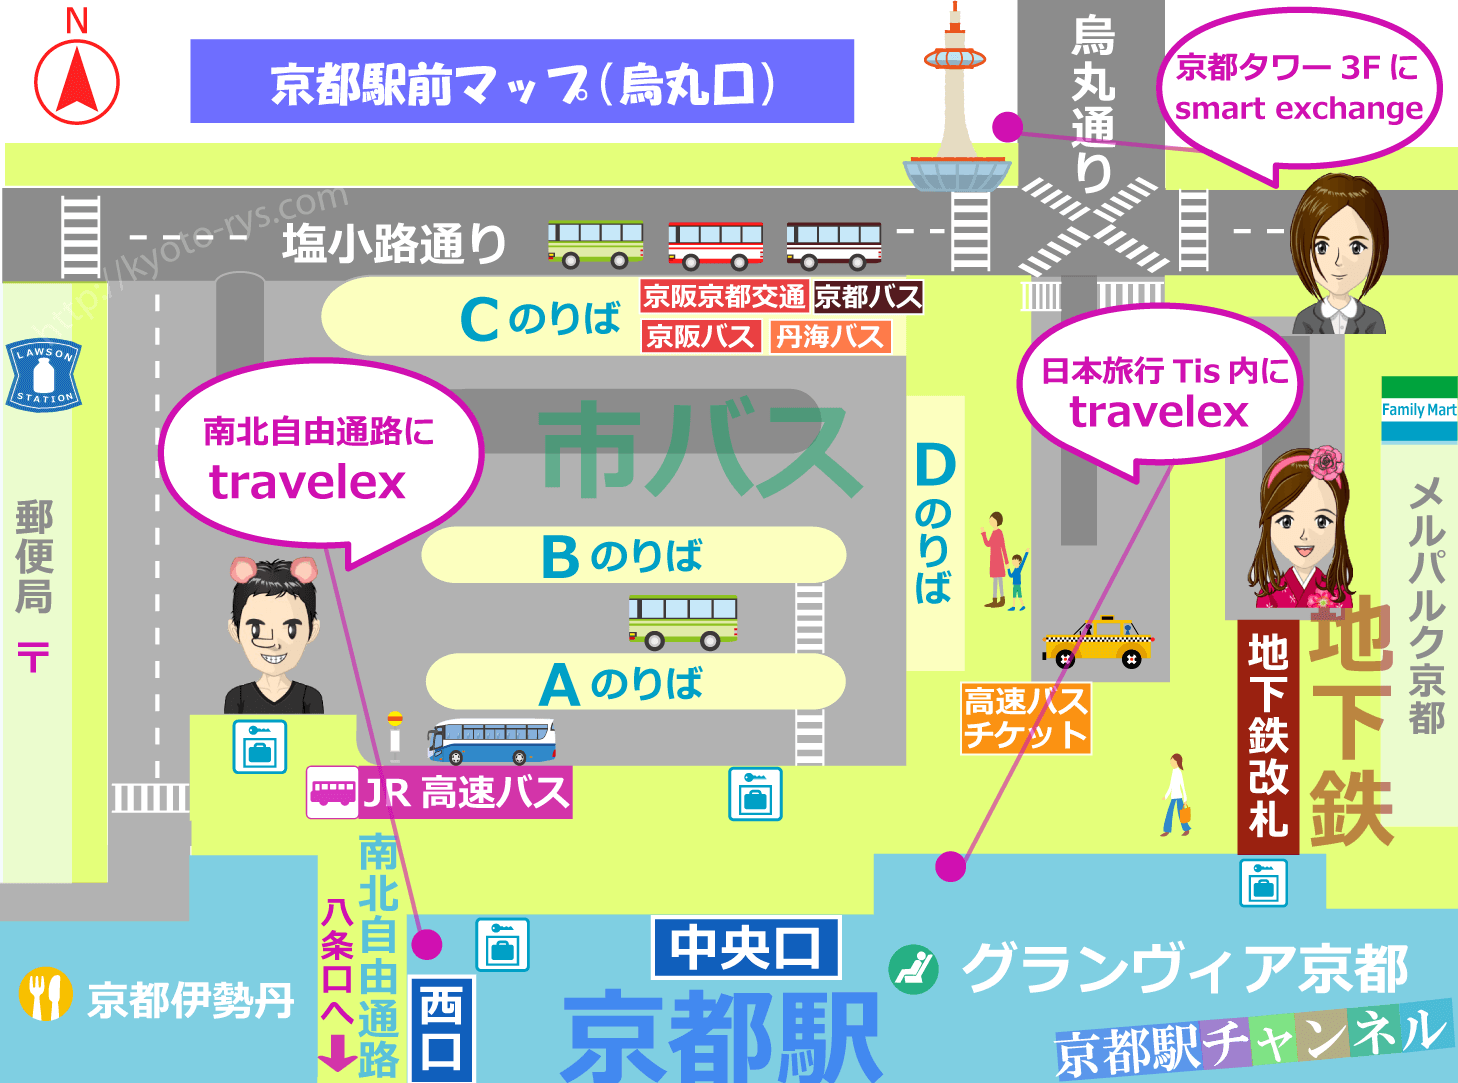 京都駅の烏丸口の外貨両替の地図